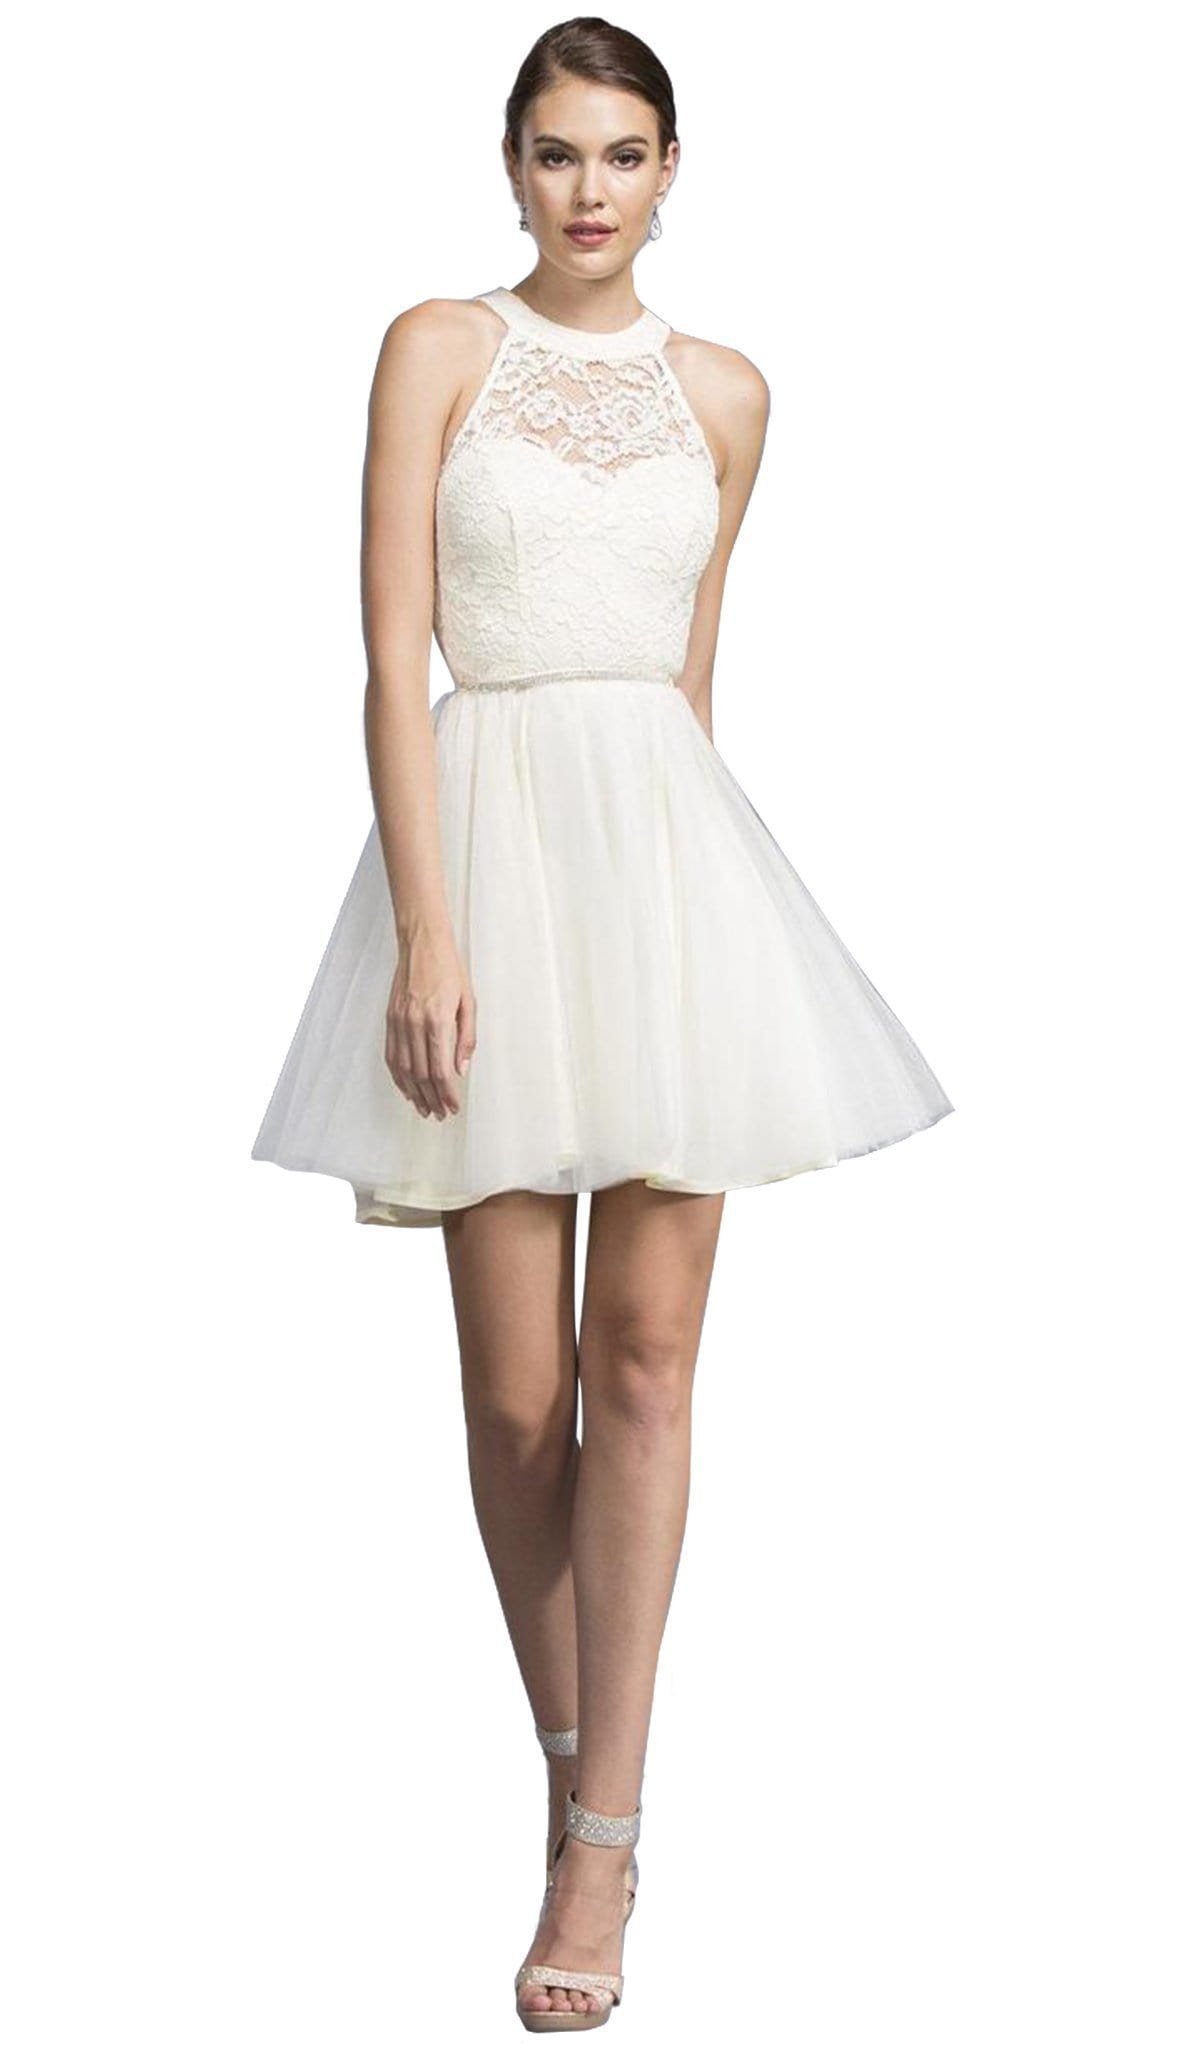 Image of Aspeed Design - Halter Neck Affordable Prom Dress with Crystal Ornate Belt